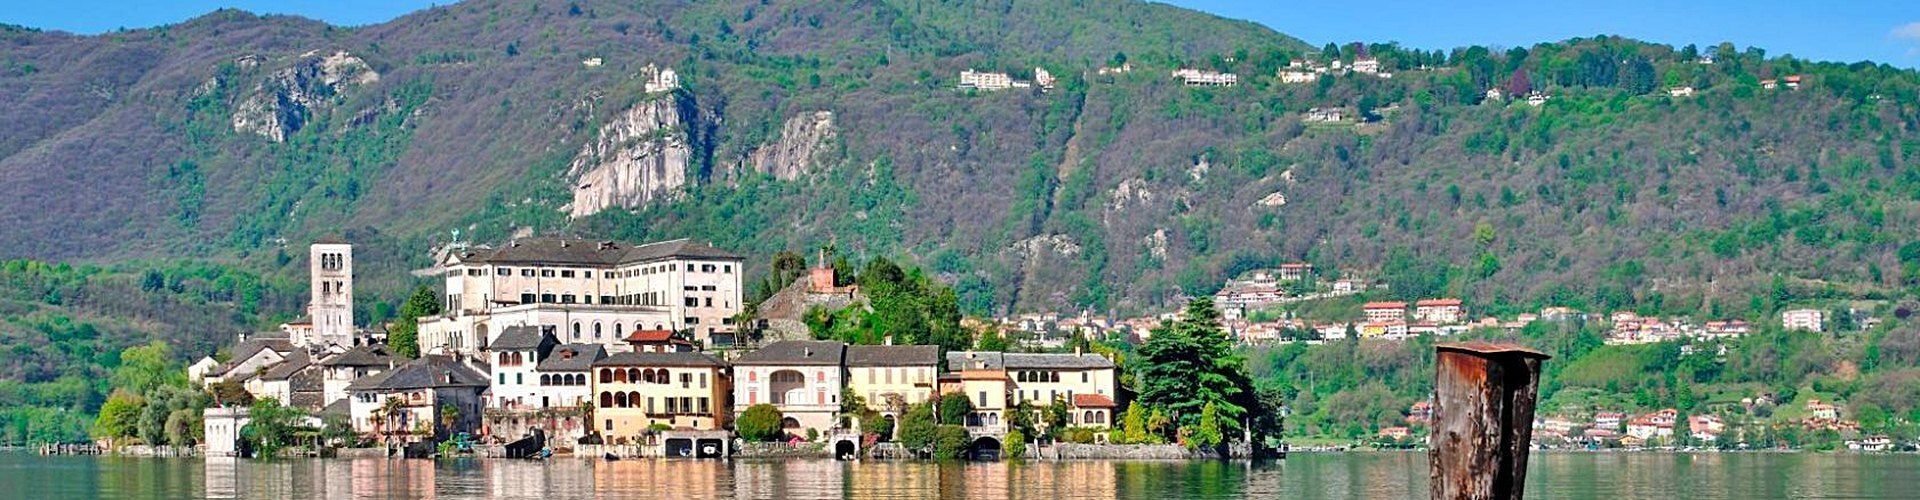 Ruta por los lagos del norte de Italia en coche